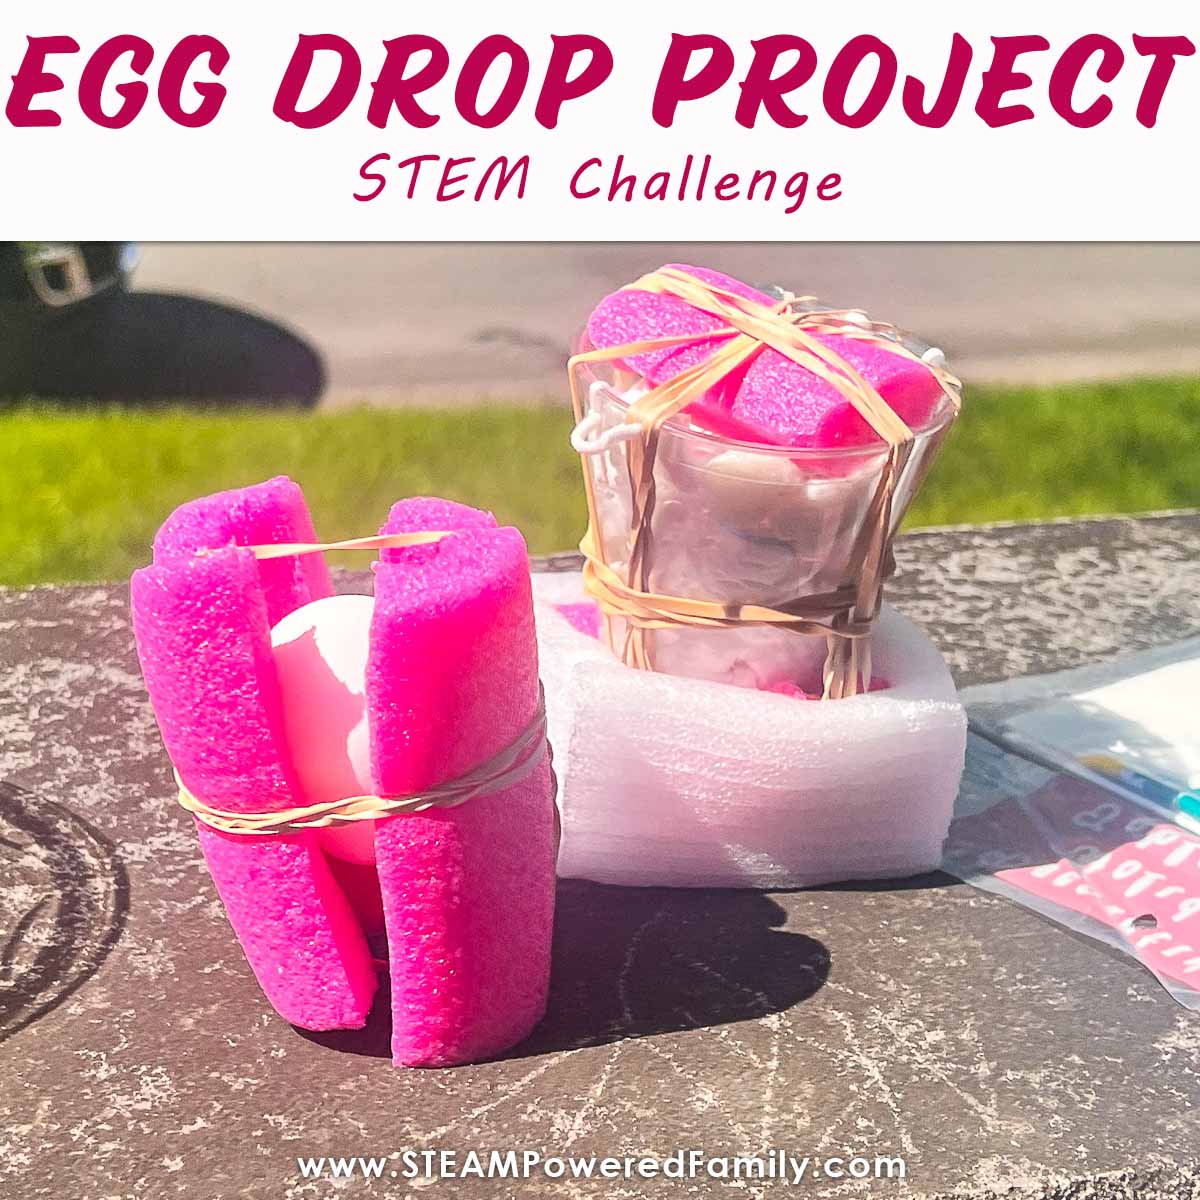 Egg Drop Project